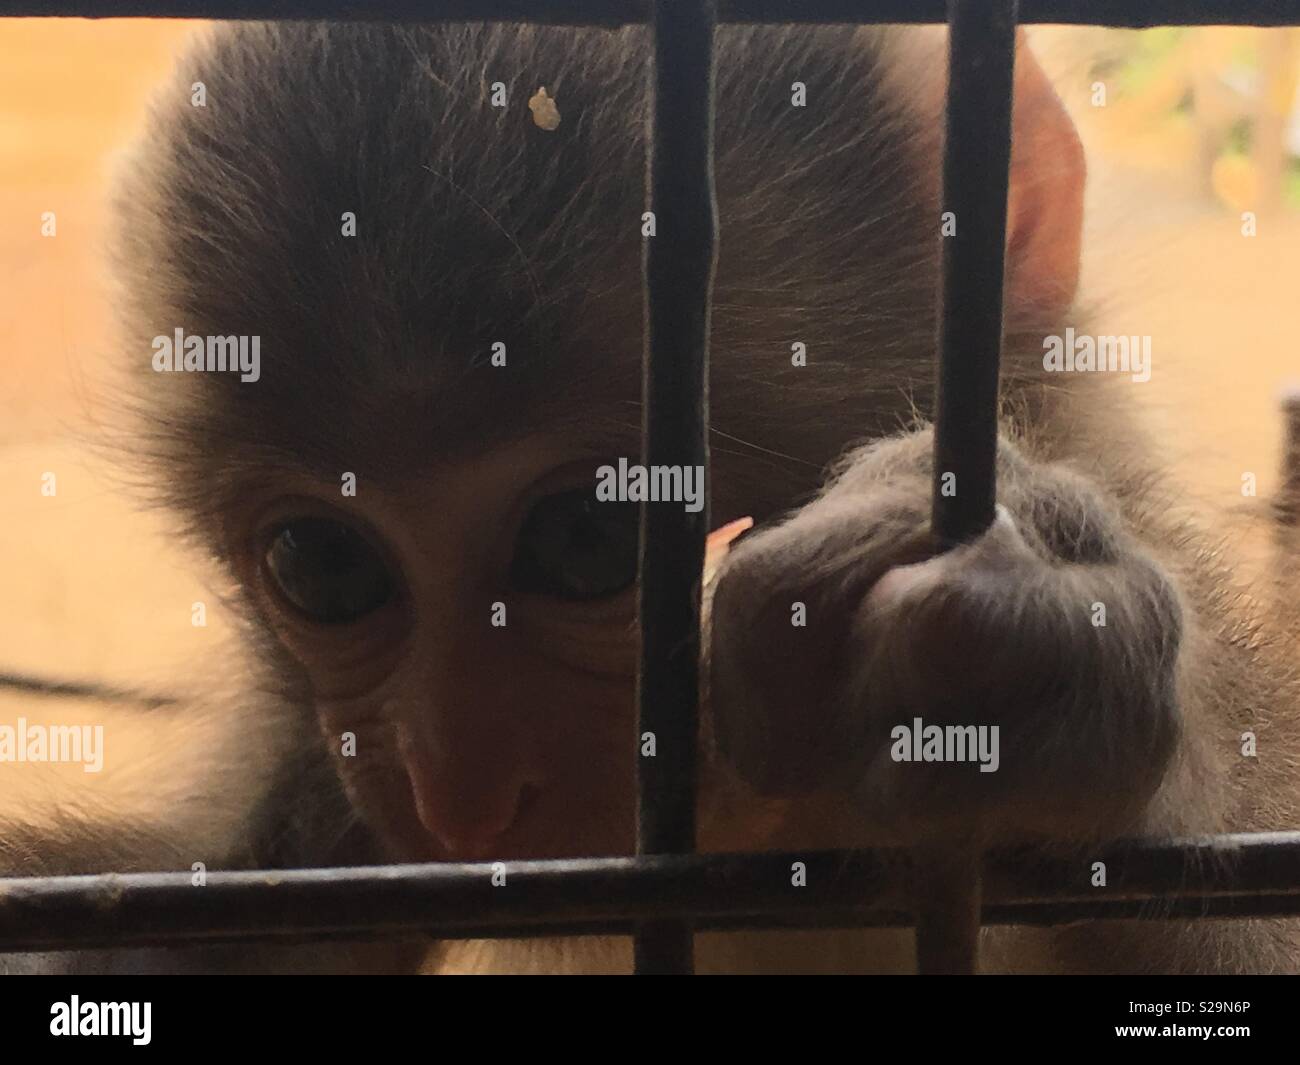 Baby monkey with mesmerizing eyes Stock Photo